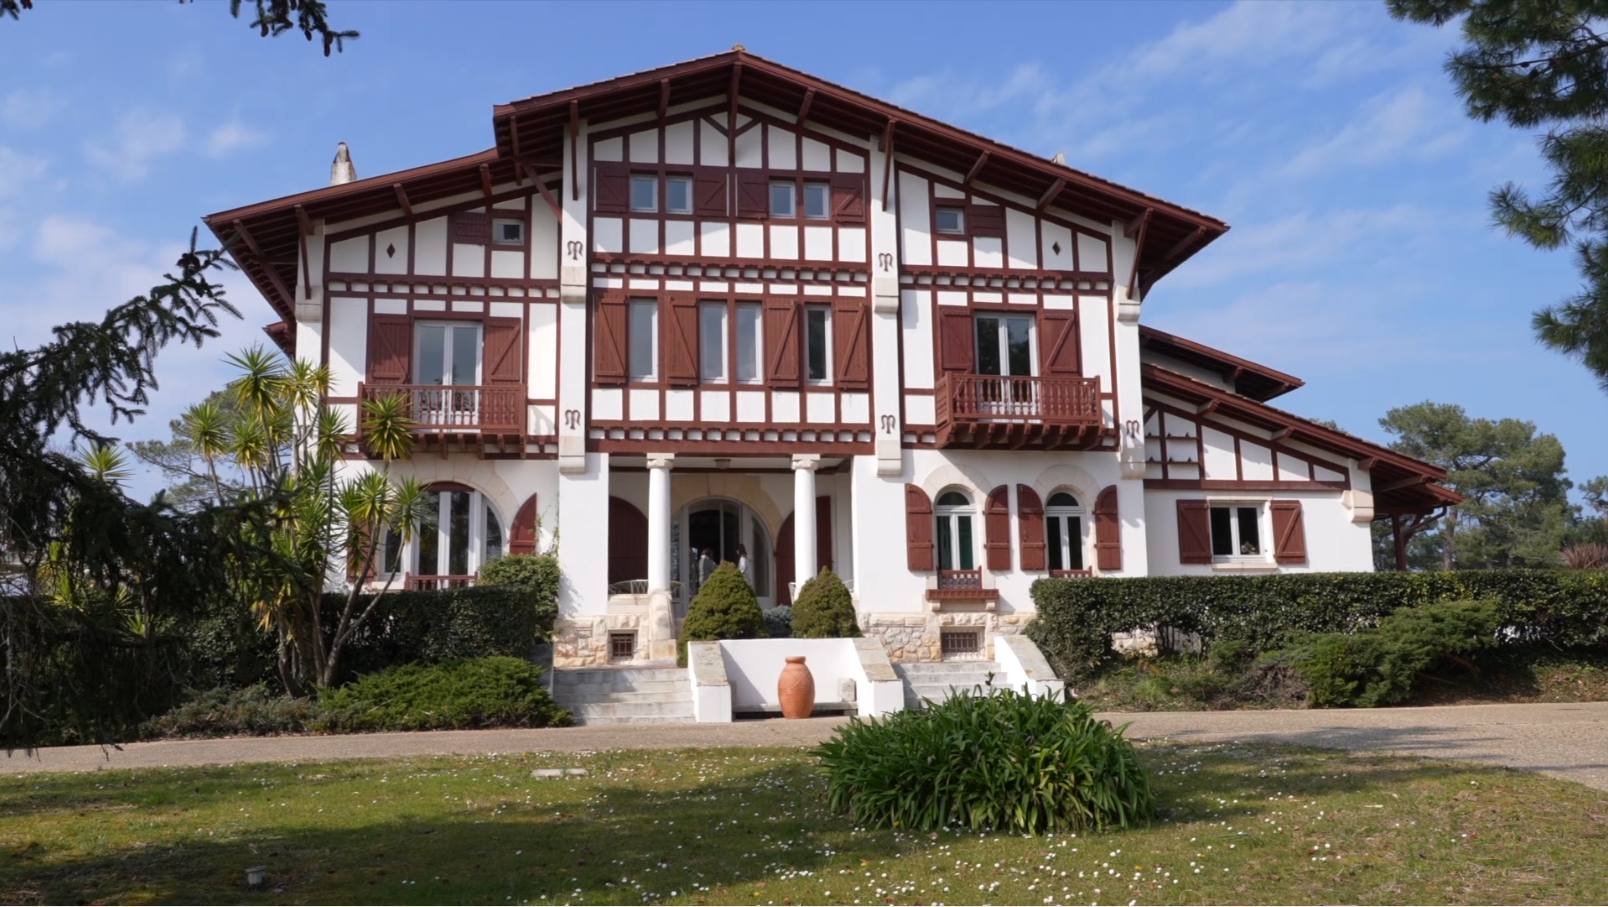 Villa Ttalienia à Bidart © Région Nouvelle-Aquitaine, Prêt à Diffuser